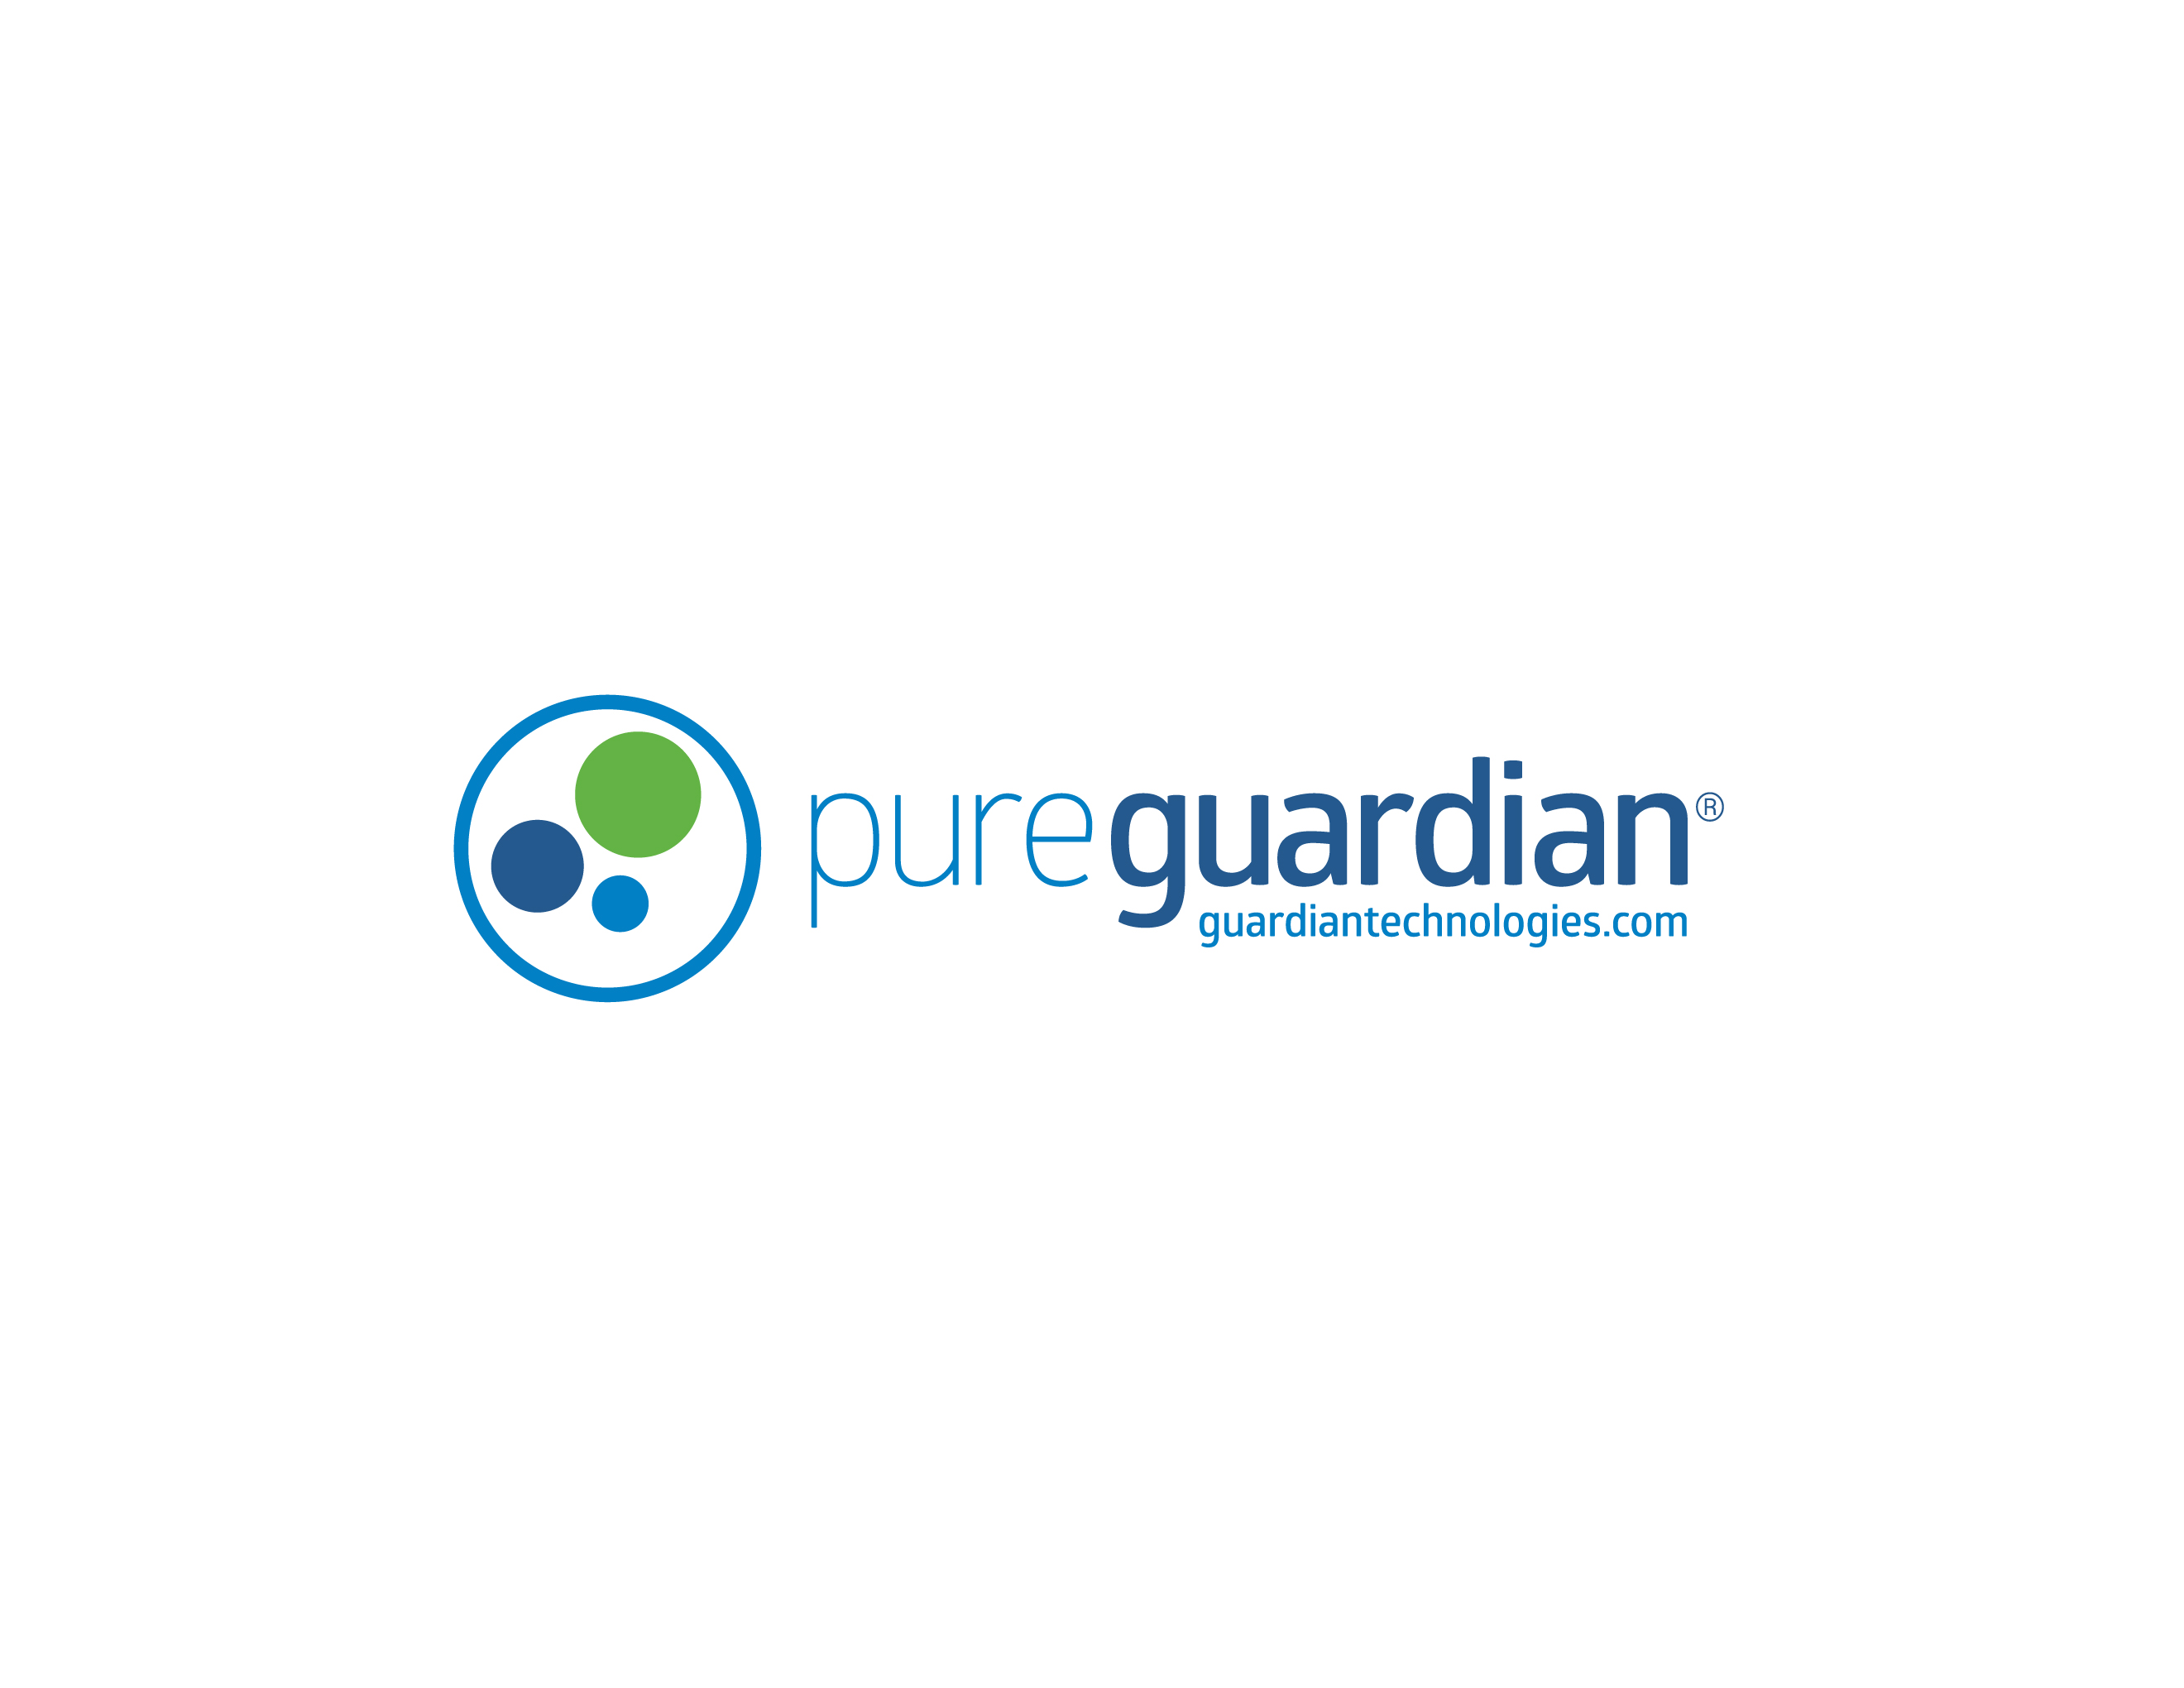 pureguardian